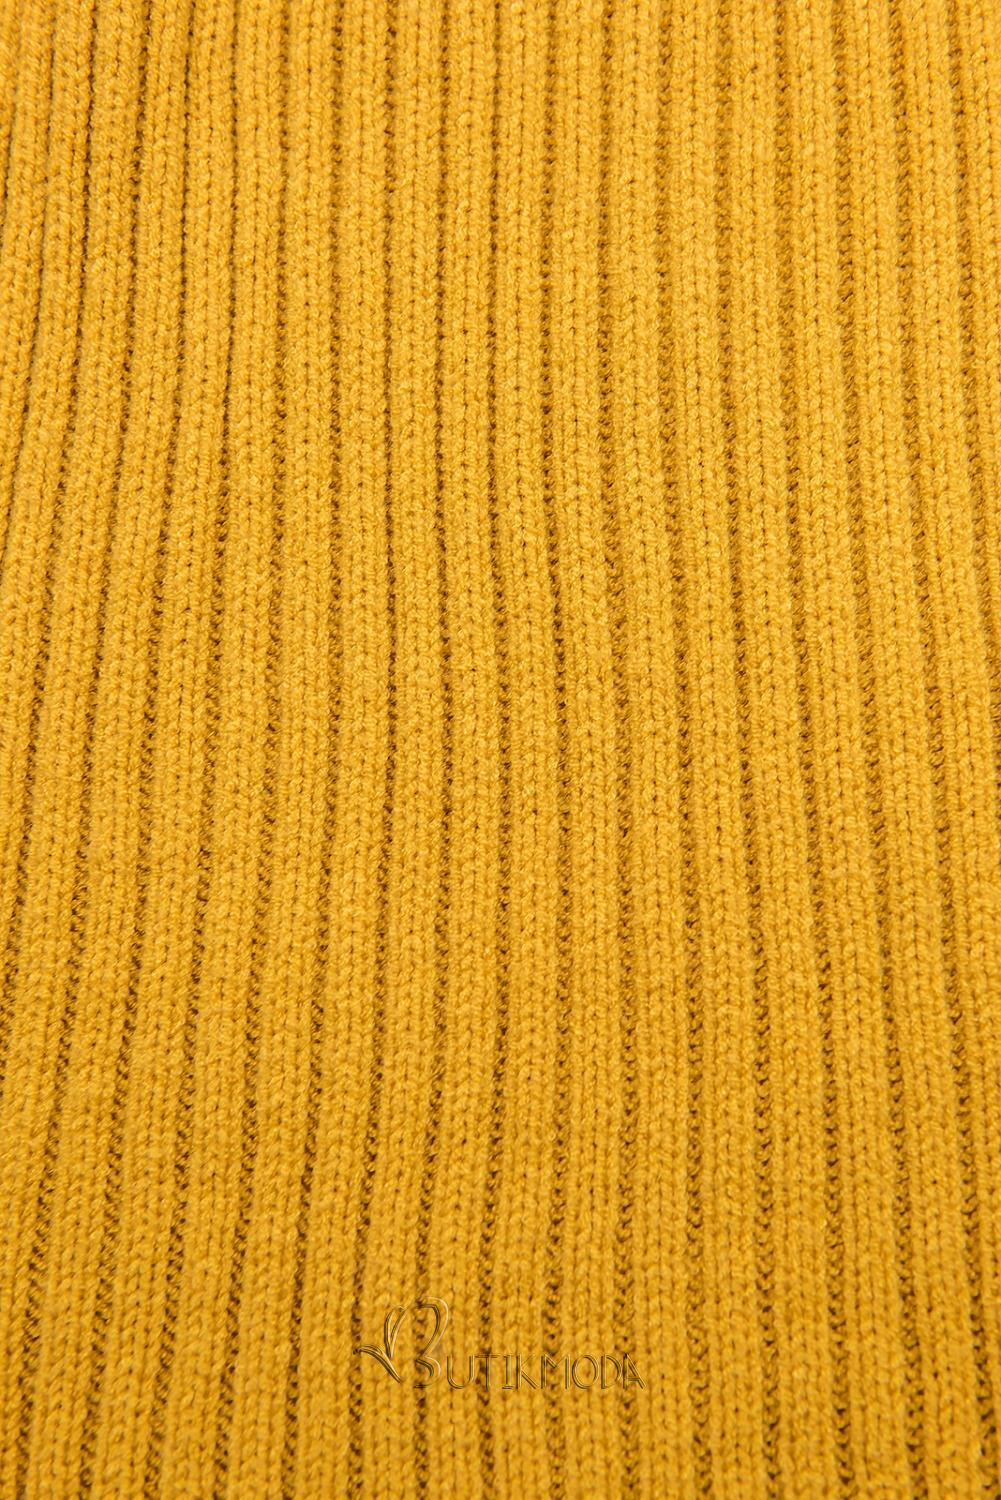 Rochie galbenă din tricot cu guler înalt